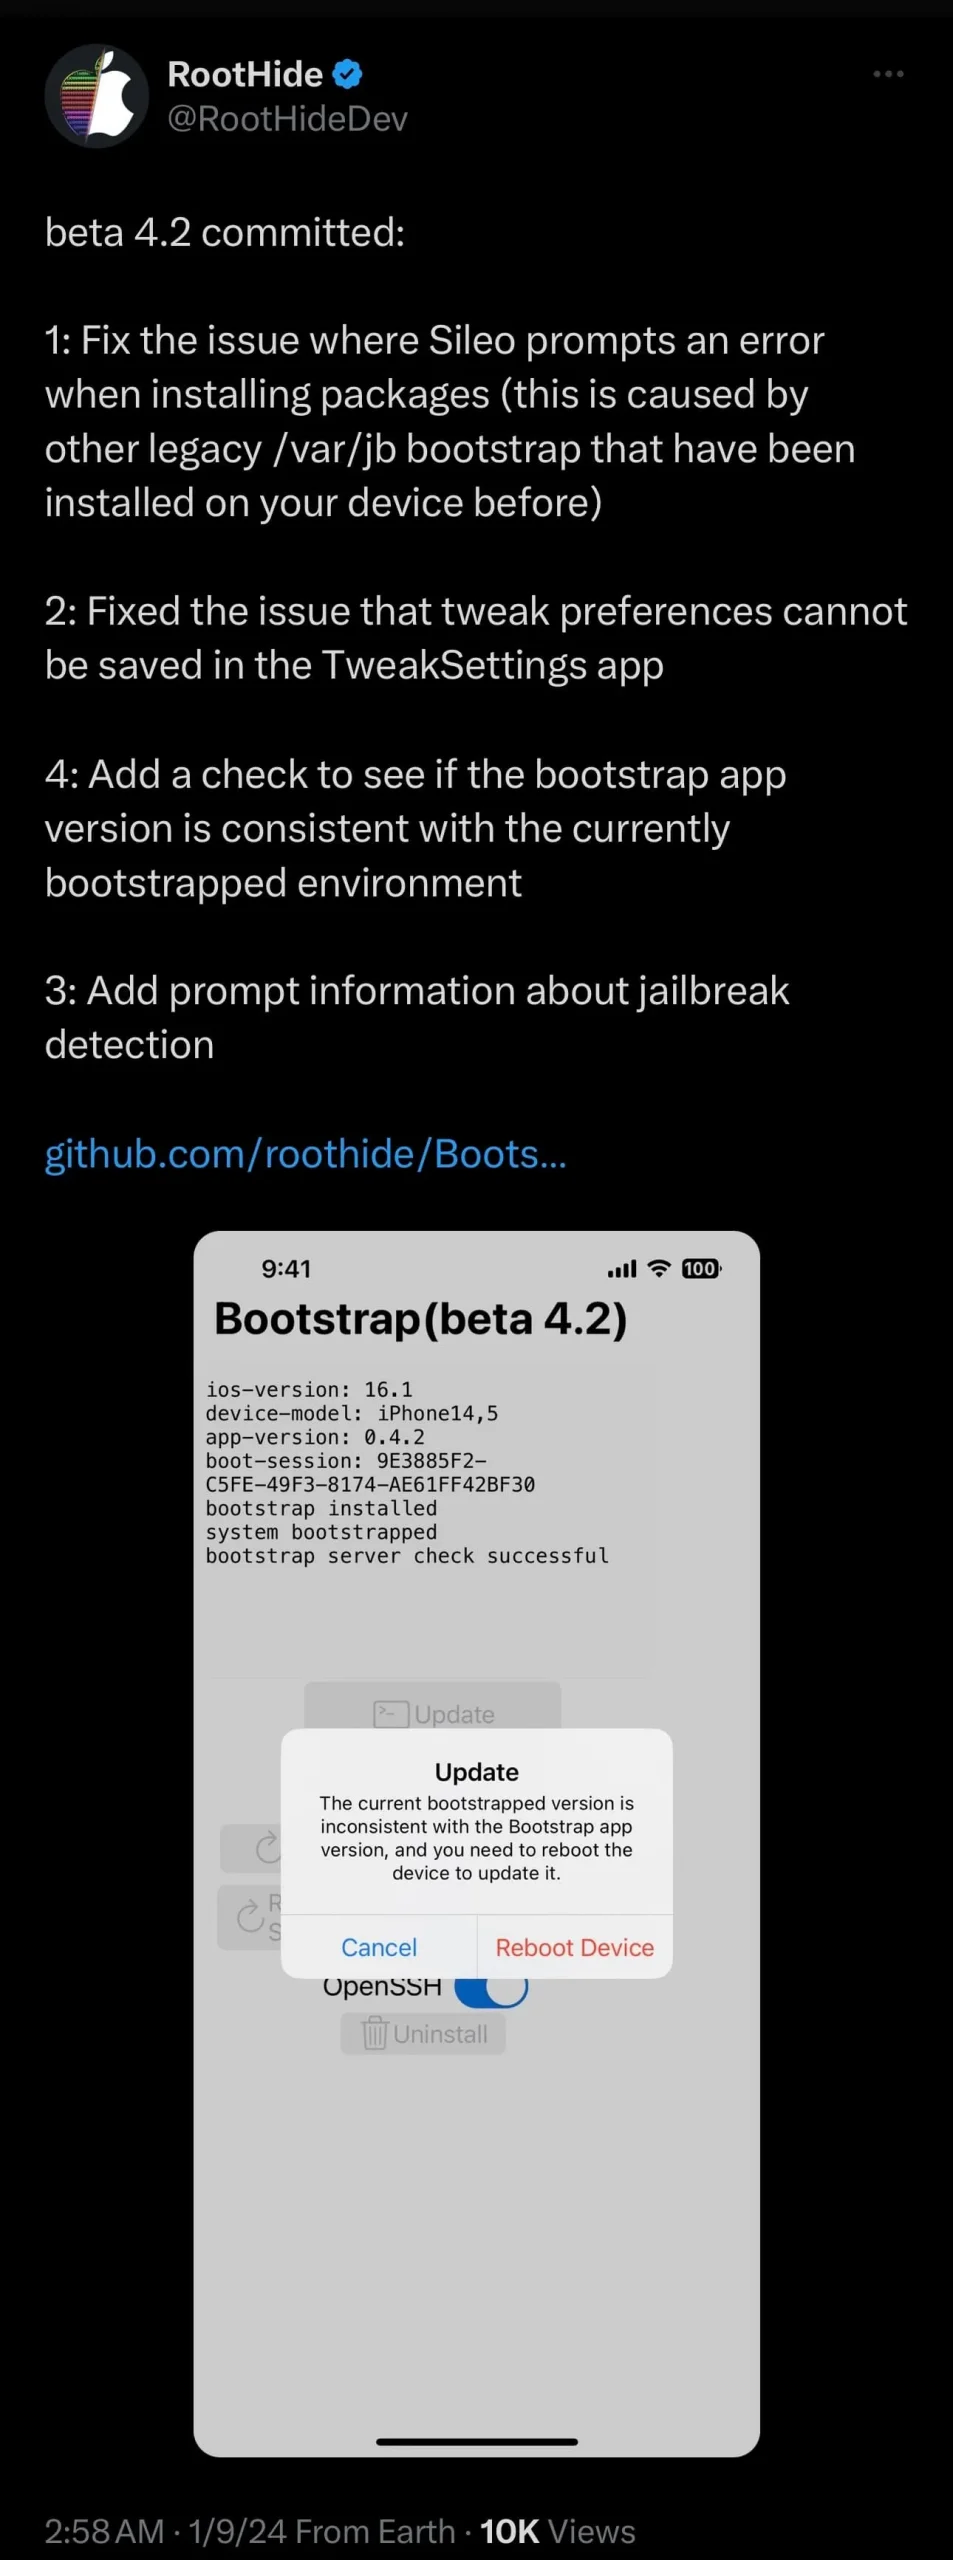 Lanzamiento de RootHide bootstrap v4.2.